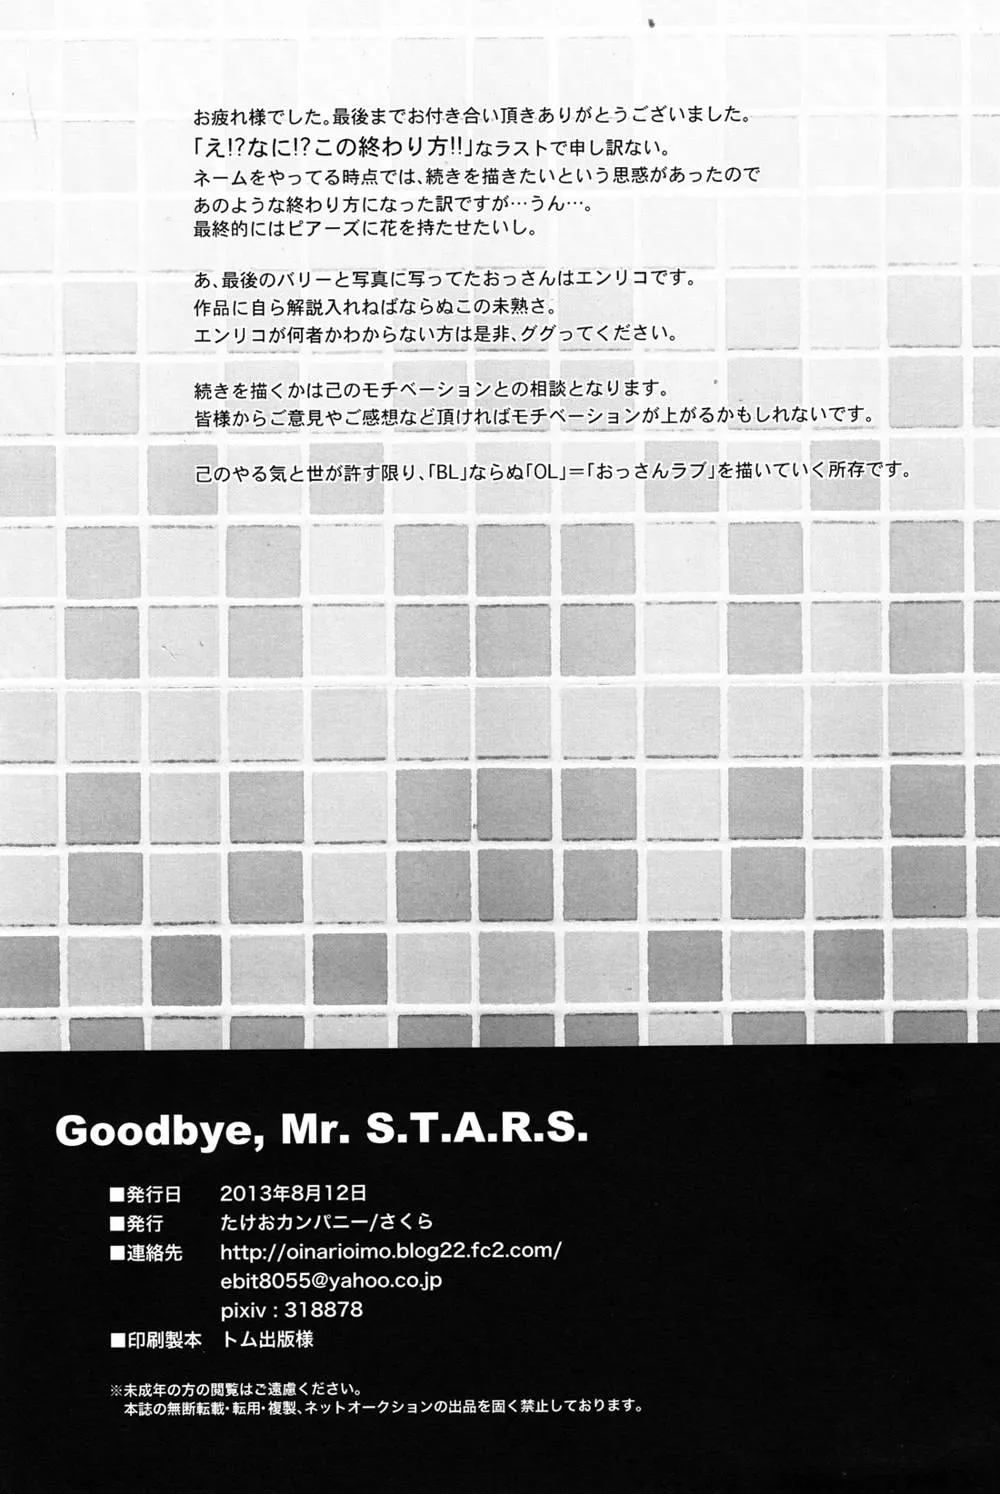 FreeResident Evil,Oinarioimo: Goodbye MR S.T.A.R.S [Japanese][第41页]